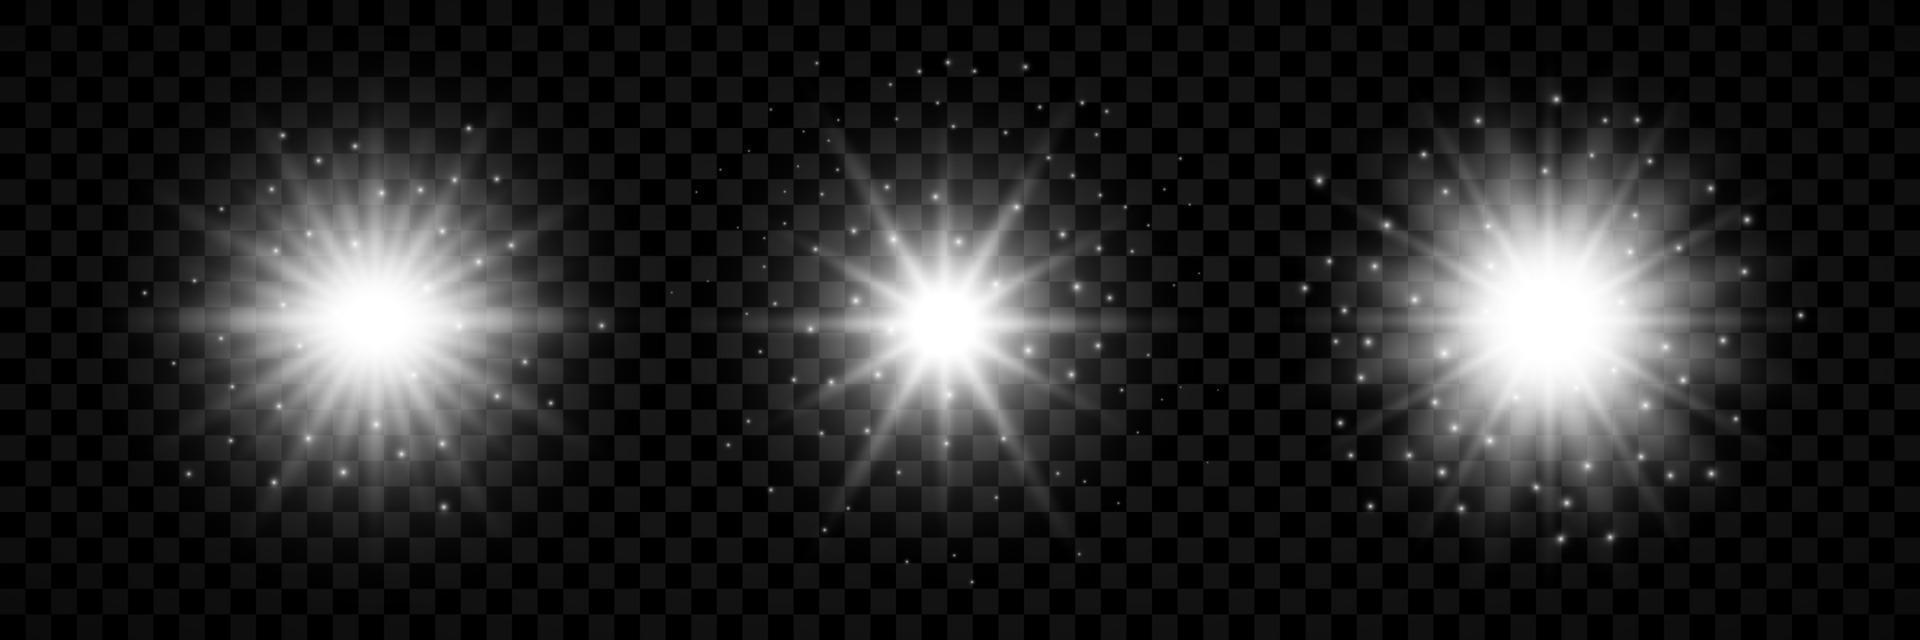 luz efeito do lente chamas. conjunto do três branco brilhando luzes starburst efeitos com brilhos em uma fundo. vetor ilustração